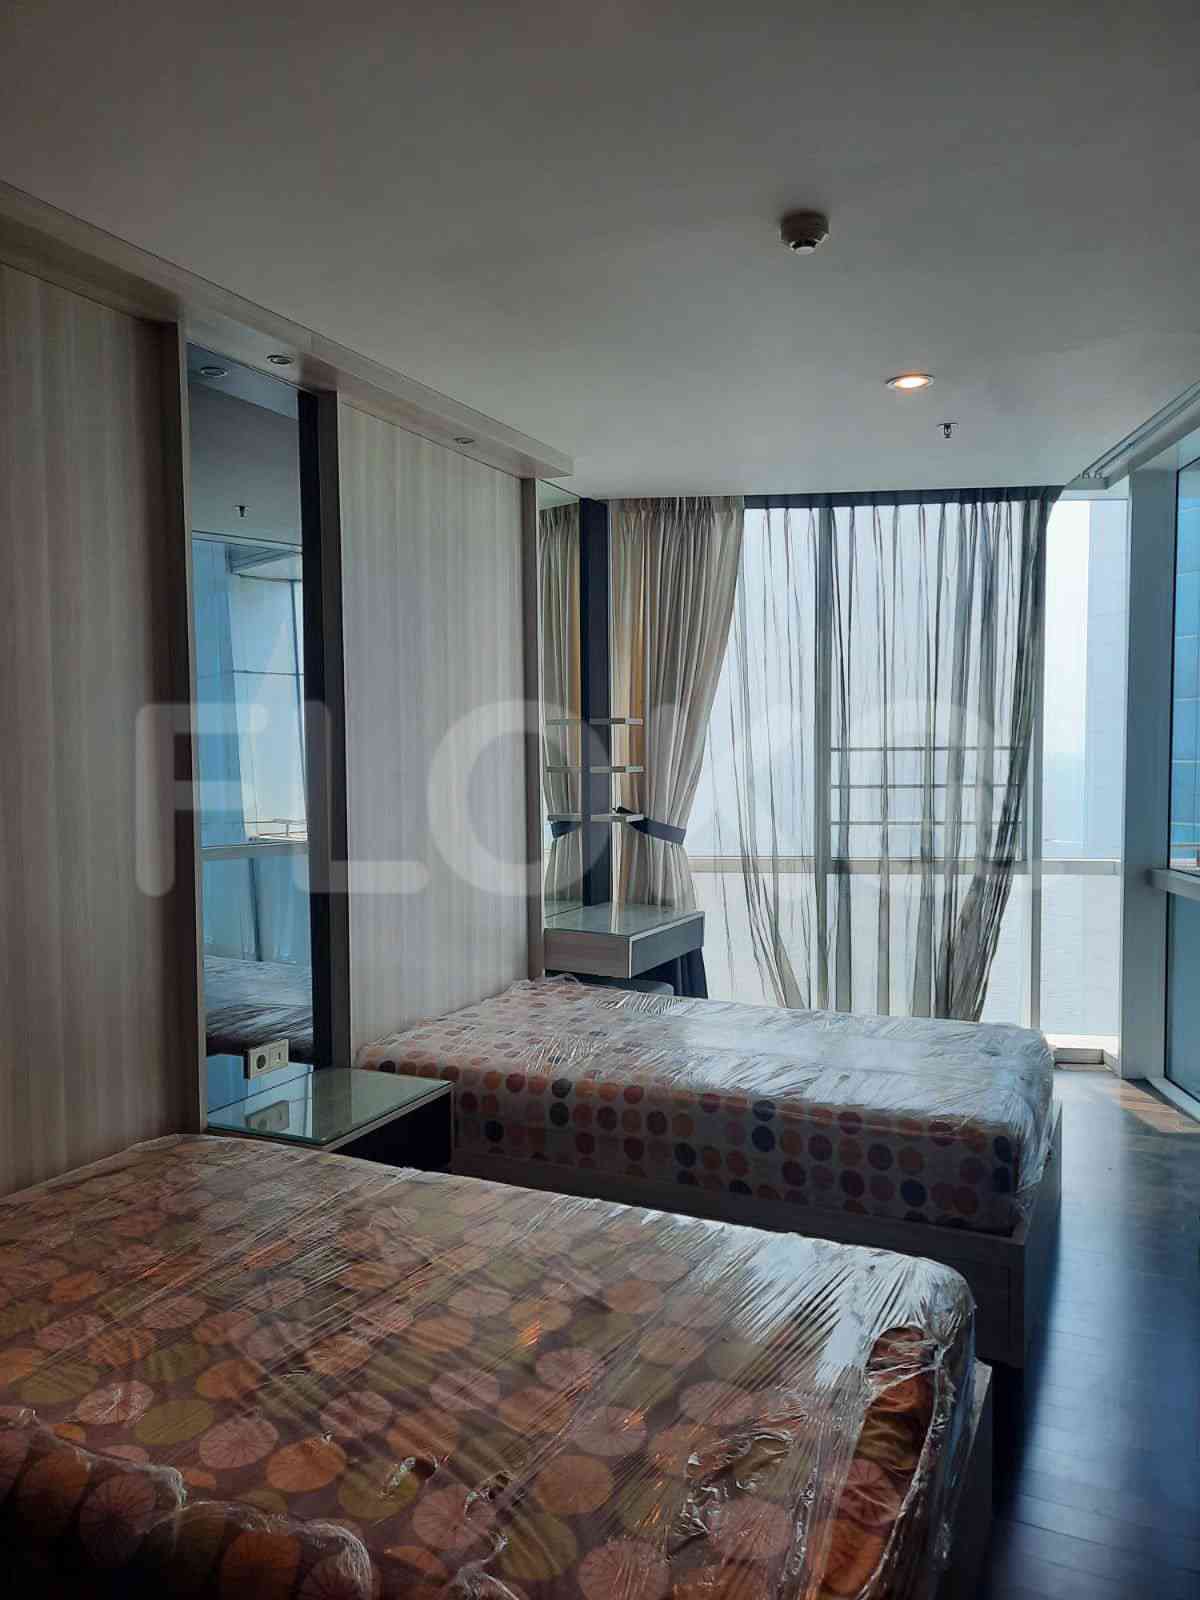 4 Bedroom on 15th Floor for Rent in Regatta - fpl609 3